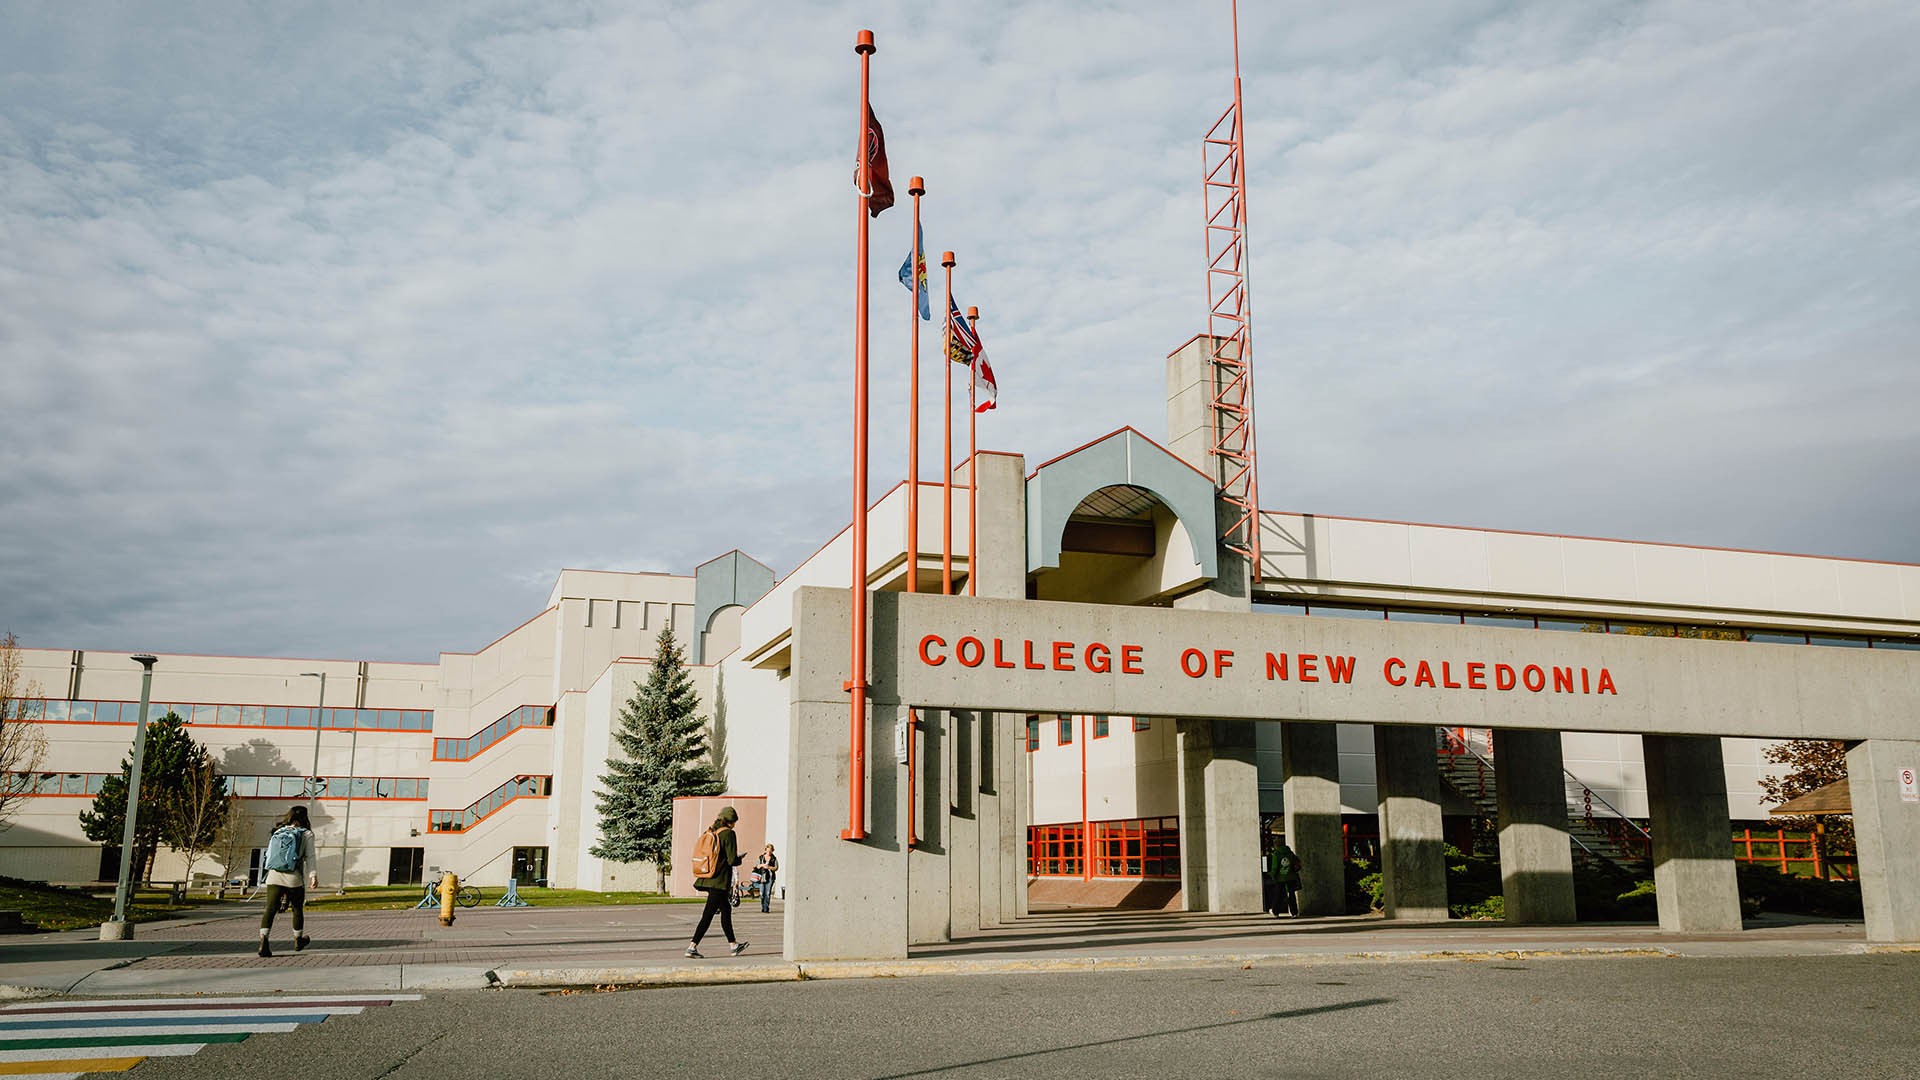 Có nên du học cao đẳng Canada tại College of New Caledonia không?